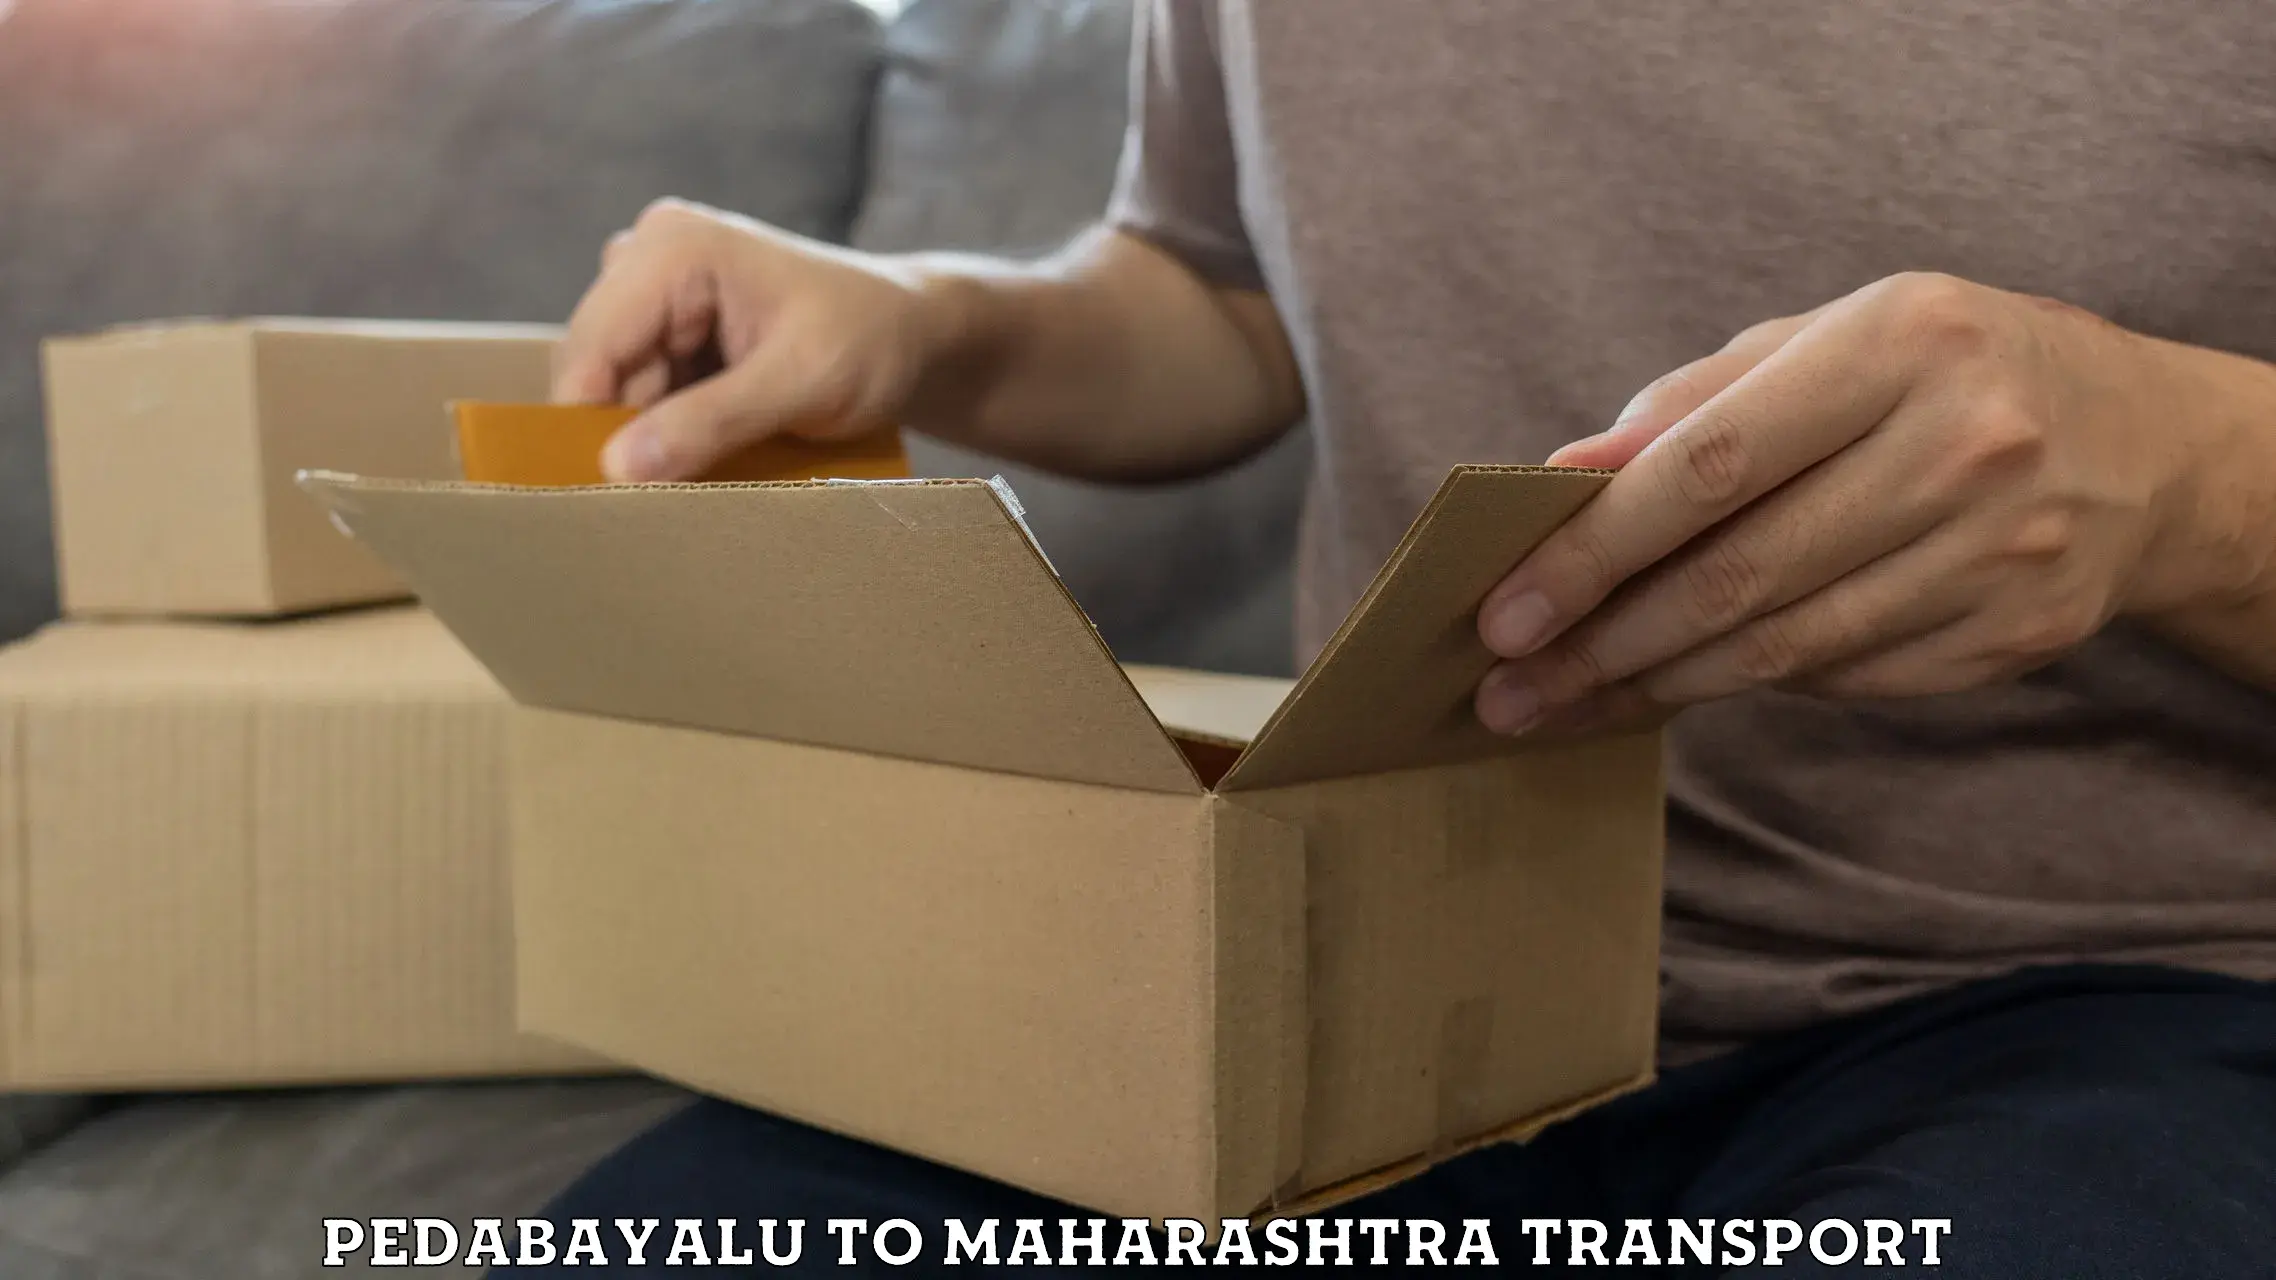 Best transport services in India Pedabayalu to Maharashtra